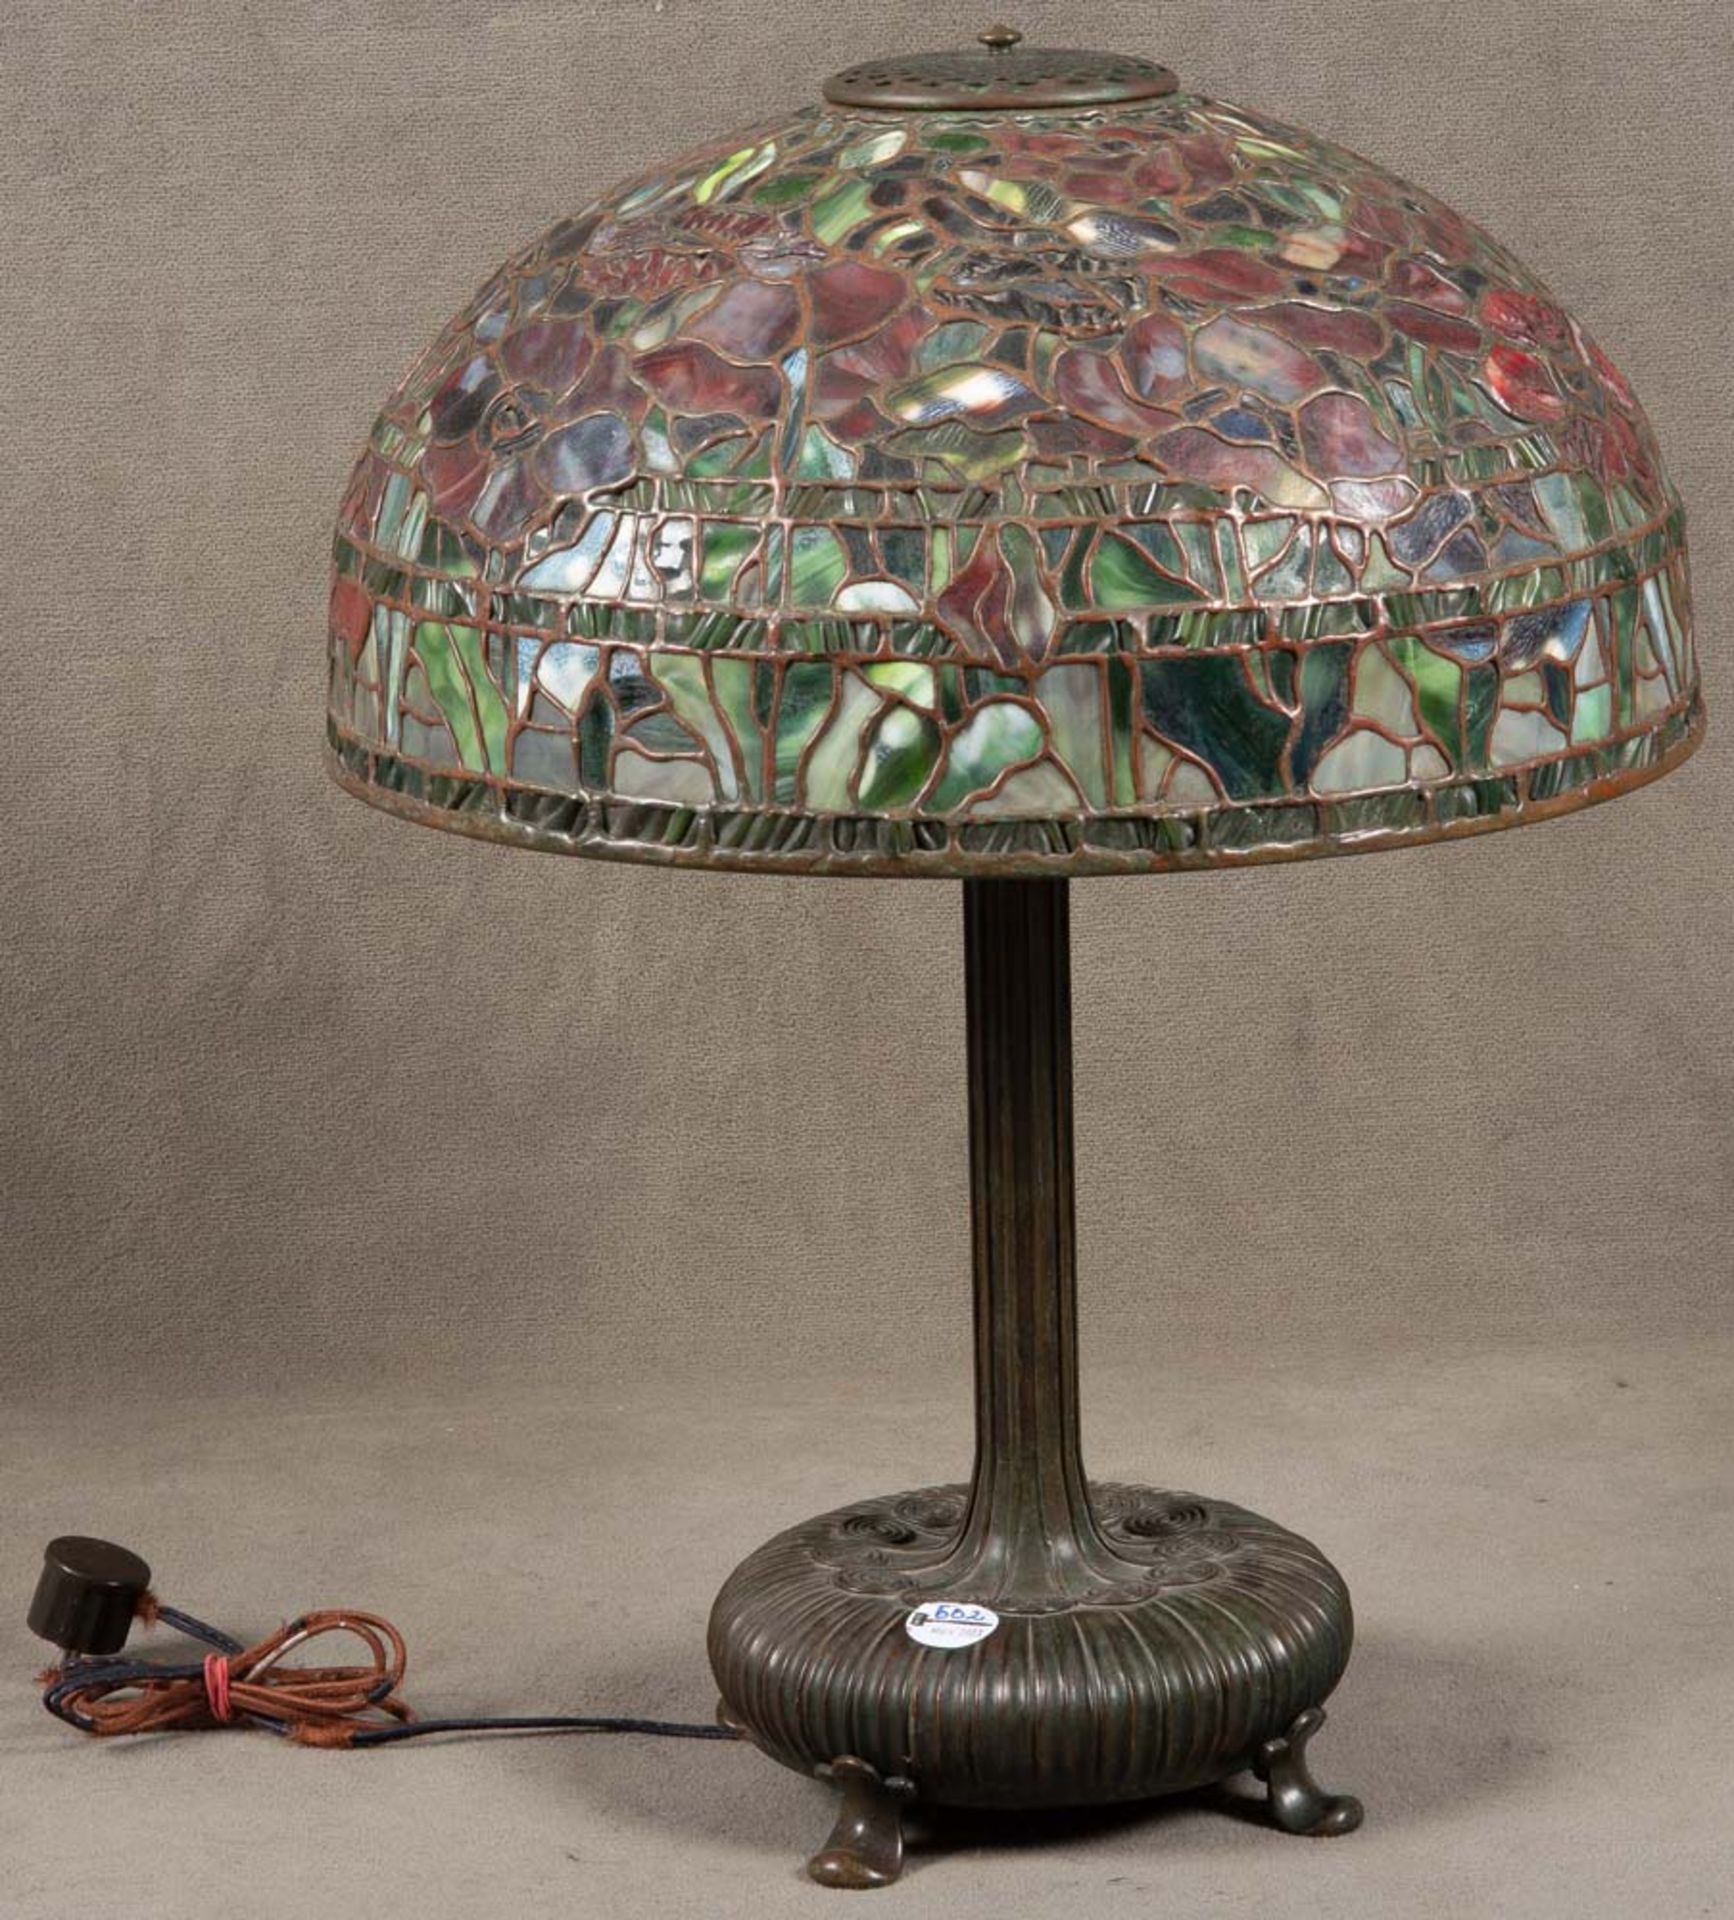 Tischlampe. 20. Jh. Bleiverglaster Schirm, Buntglas, Bronzefuß, H=60 cm, D=45 cm. (Funktion